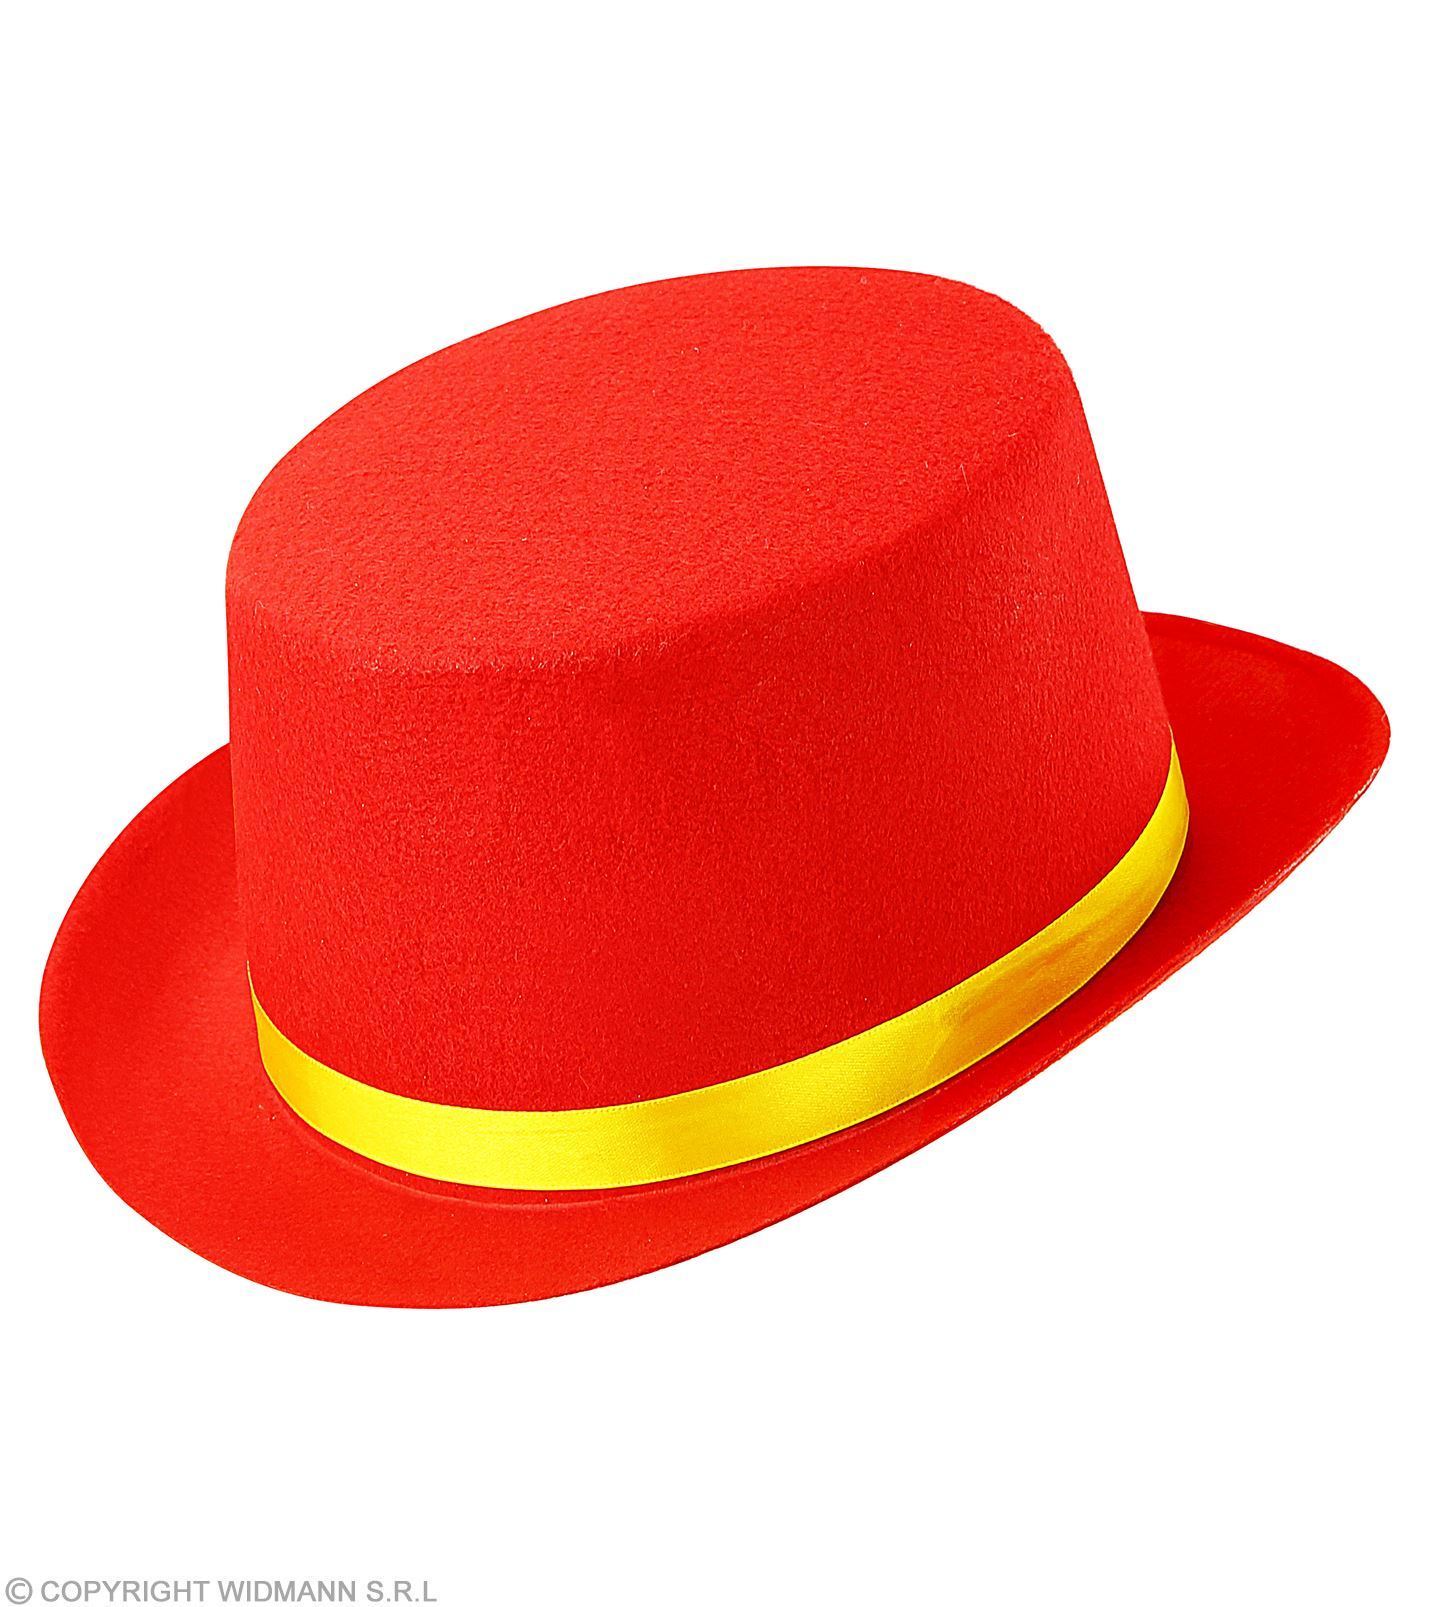 bijeenkomst bestuurder Transparant Rode hoge hoed kind Voordelig en ruime keus